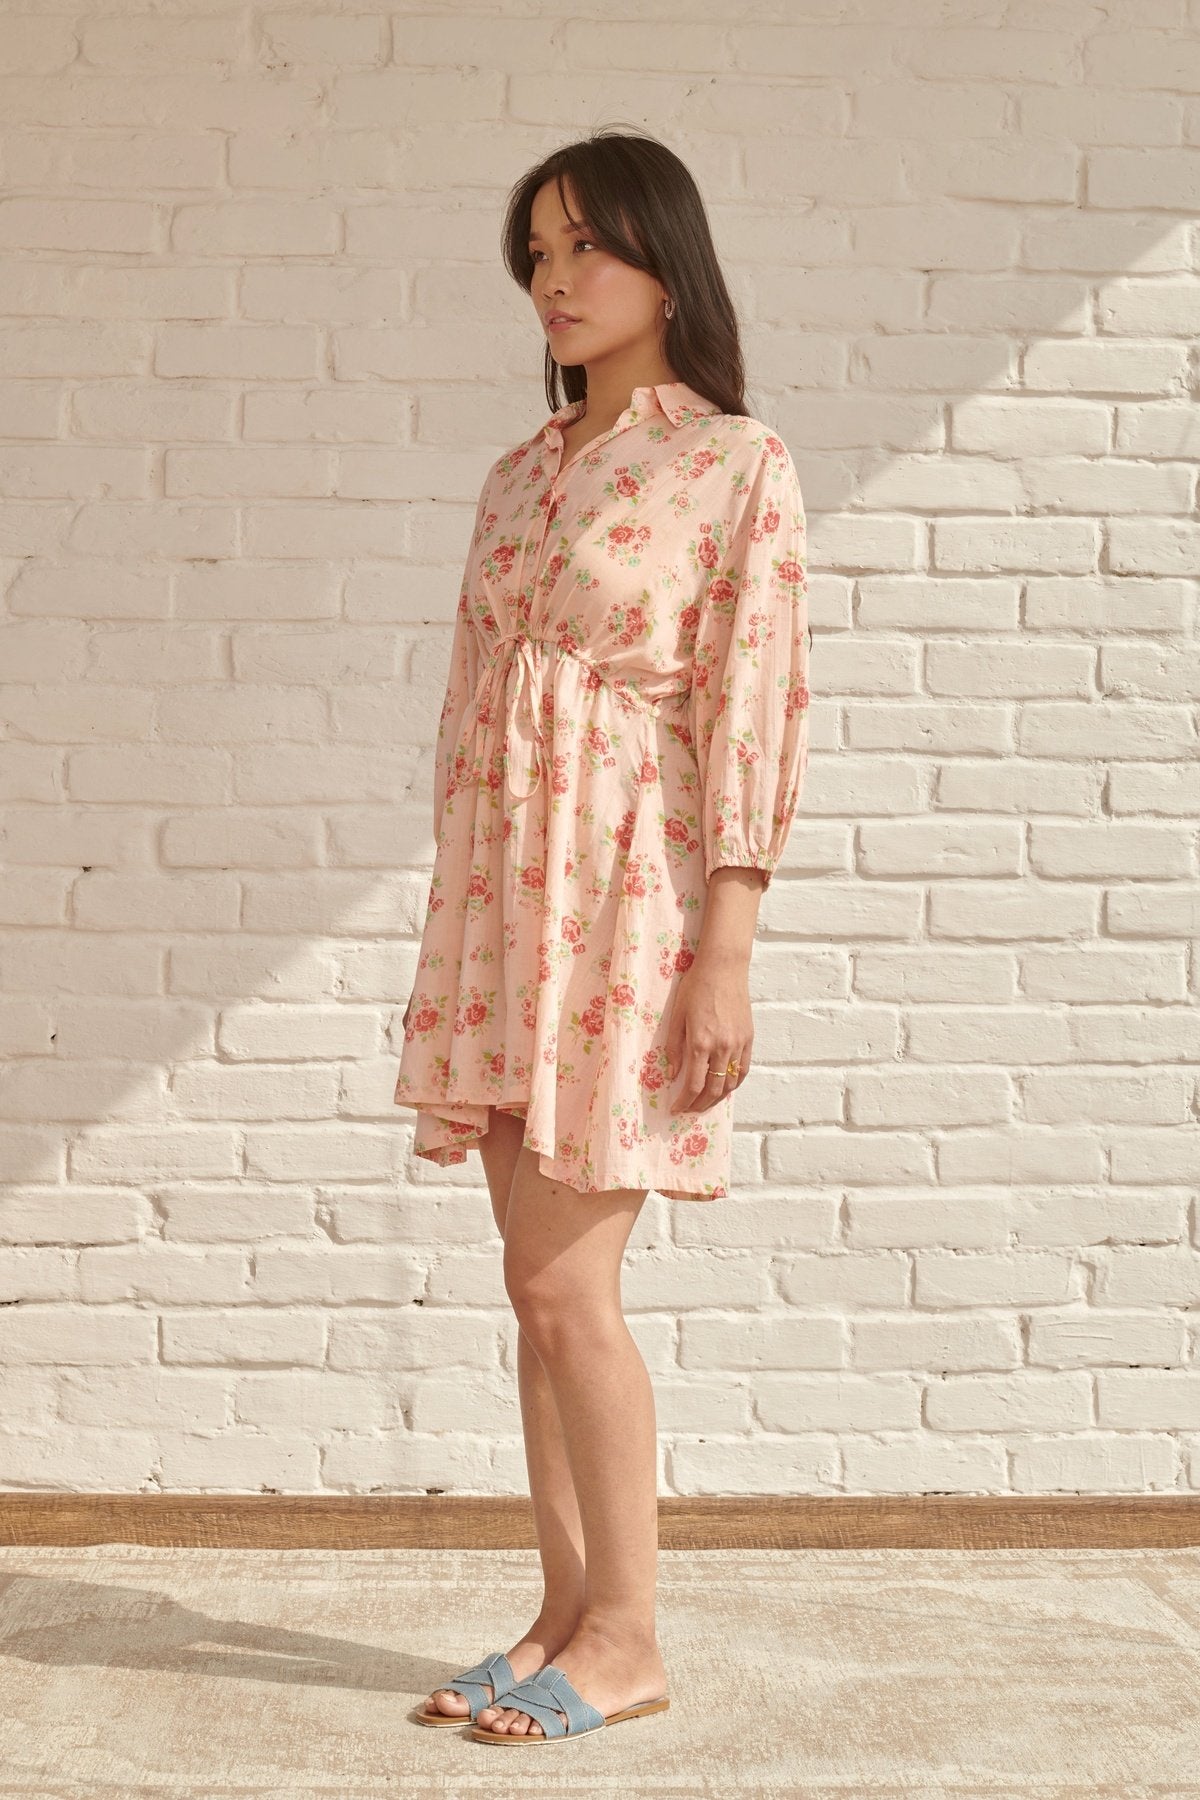 Peach Blossom Short Dress